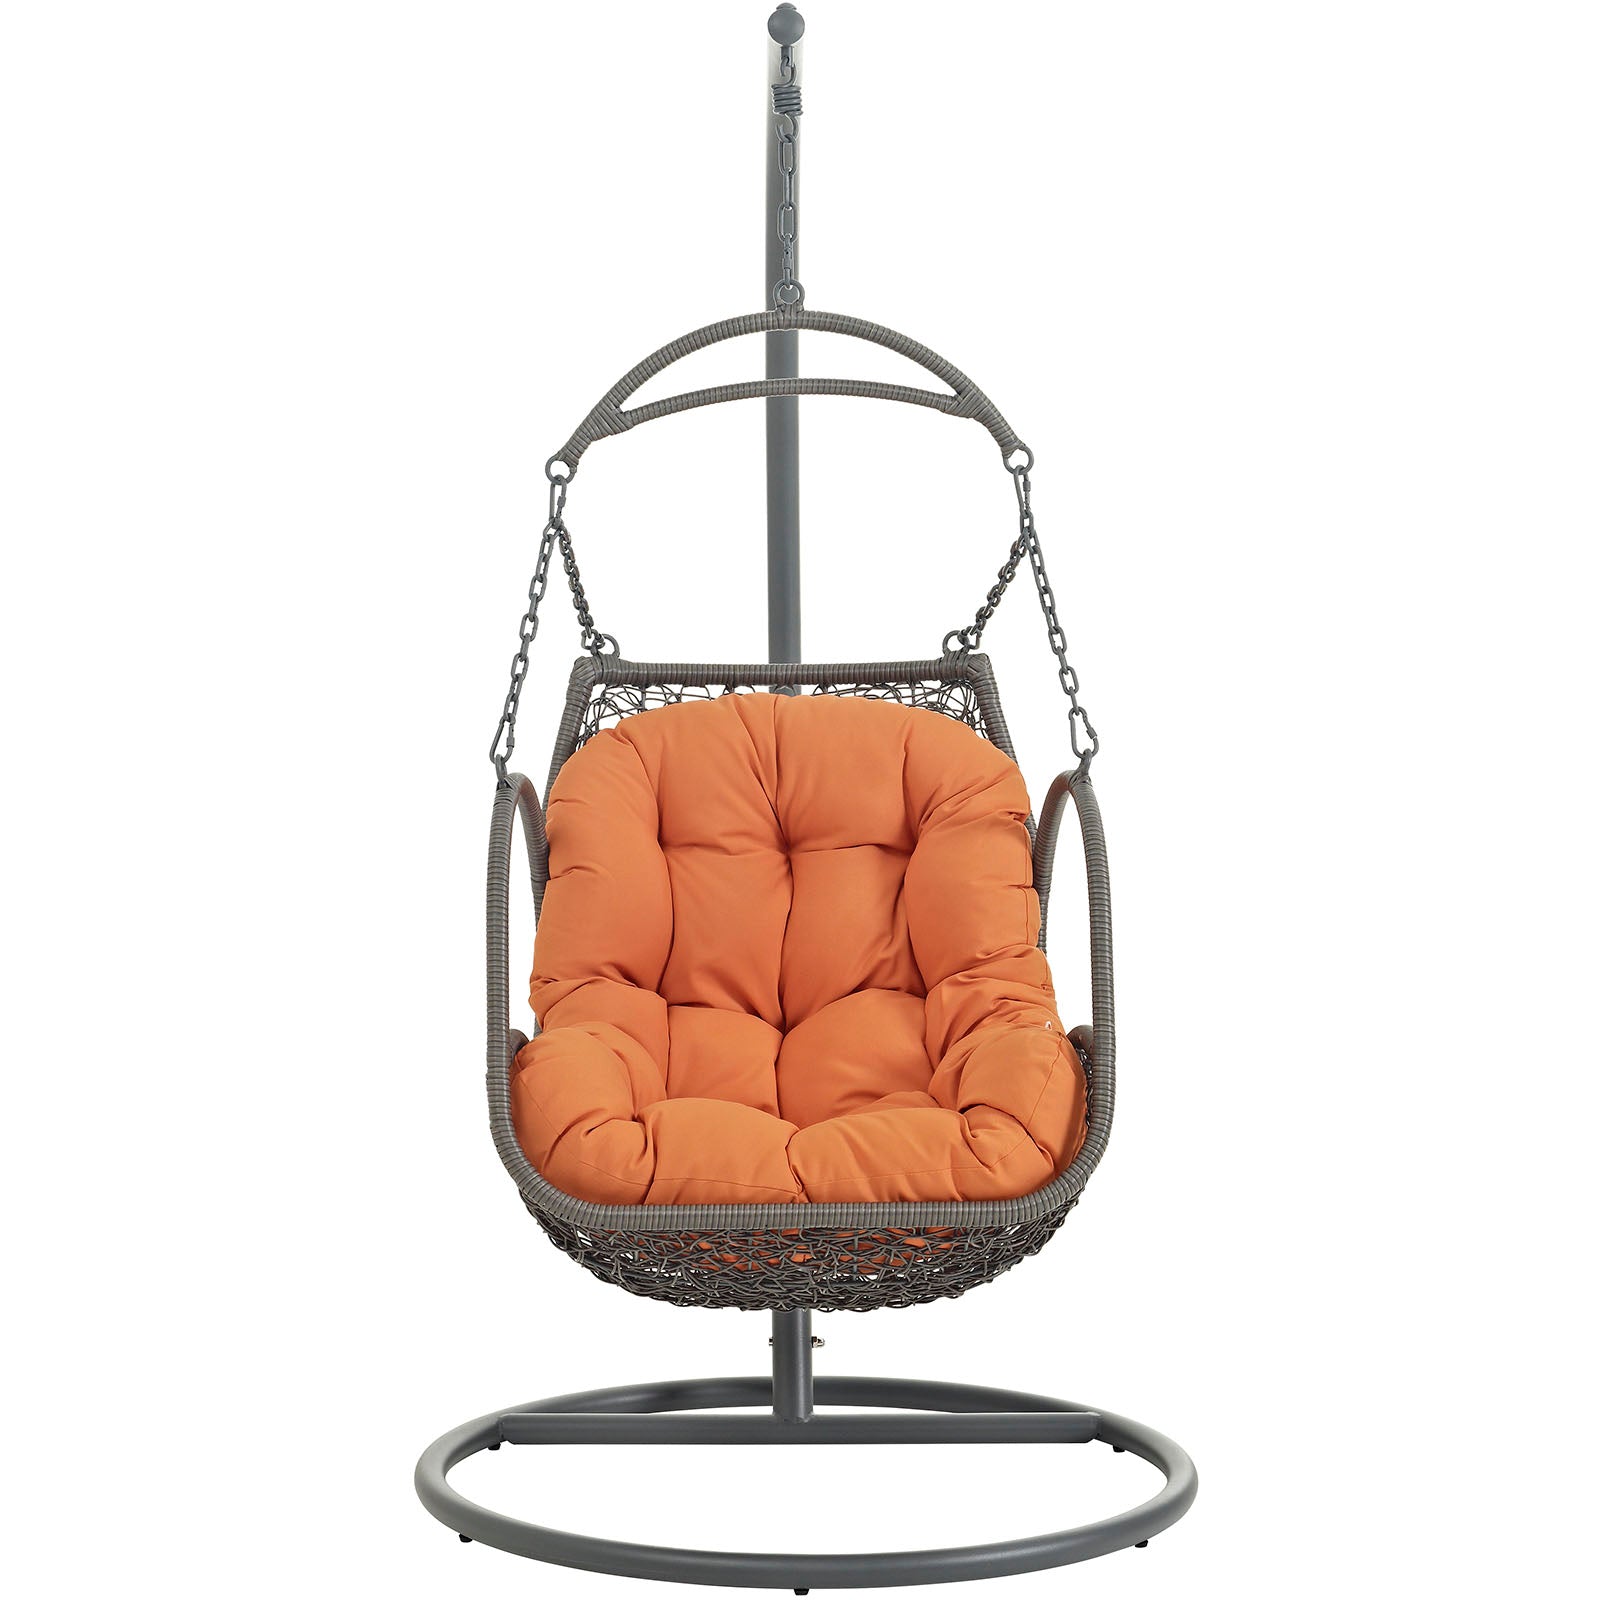 Modway - Arbor Outdoor Patio Wood Swing Chair - EEI-2279